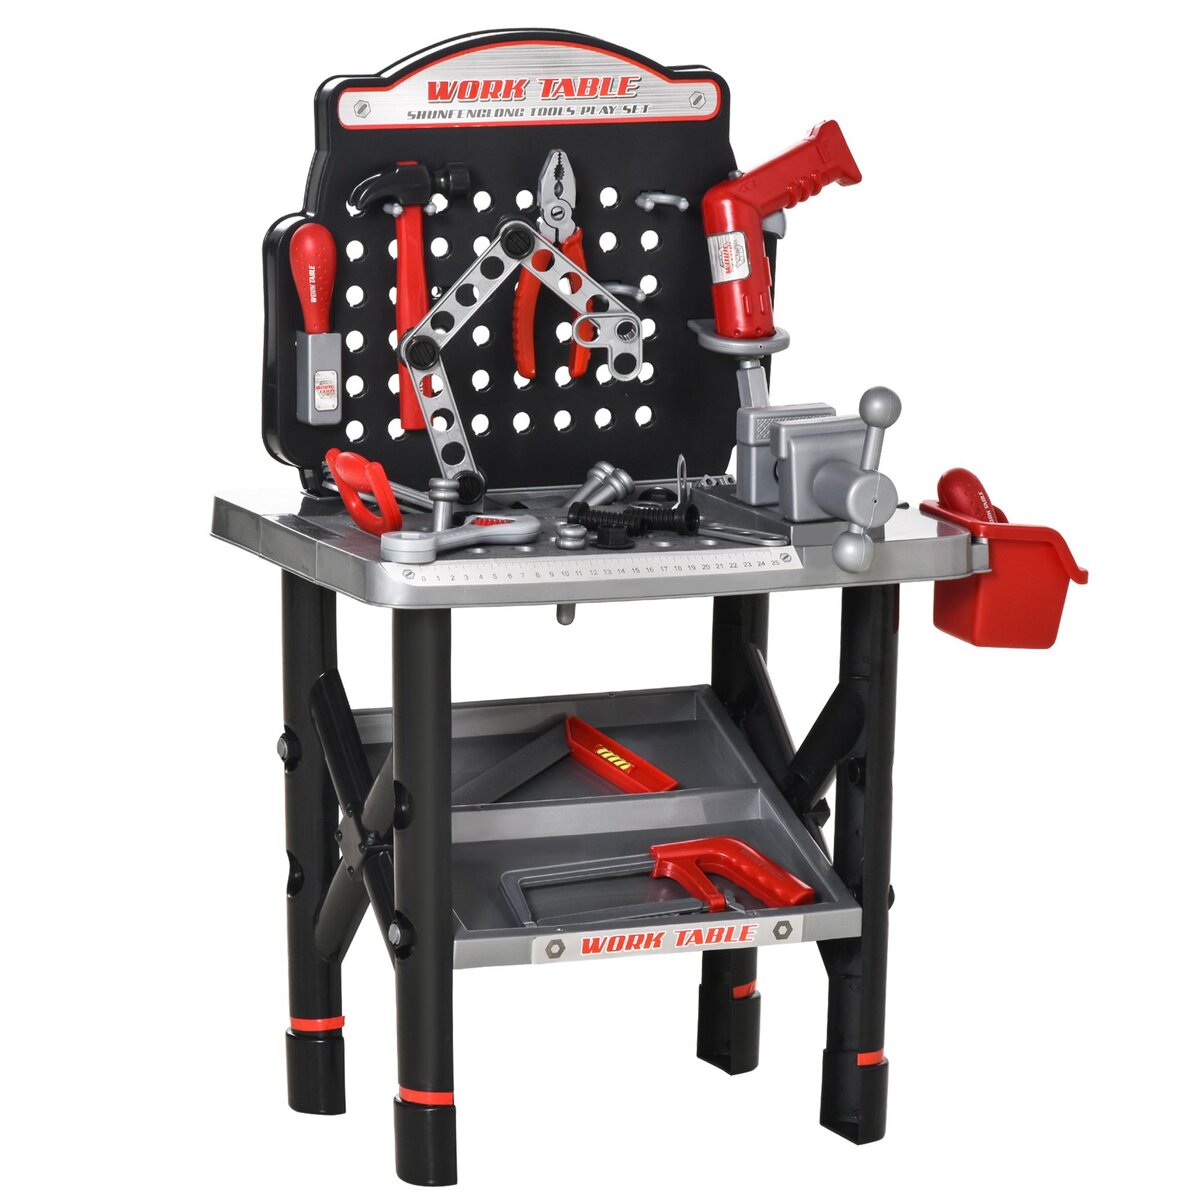 HOMCOM Etabli et outils pour enfant - jeu d'imitation bricolage - nombreux  accessoires plus de 50 pièces & outils variés - PP noir gris rouge pas cher  